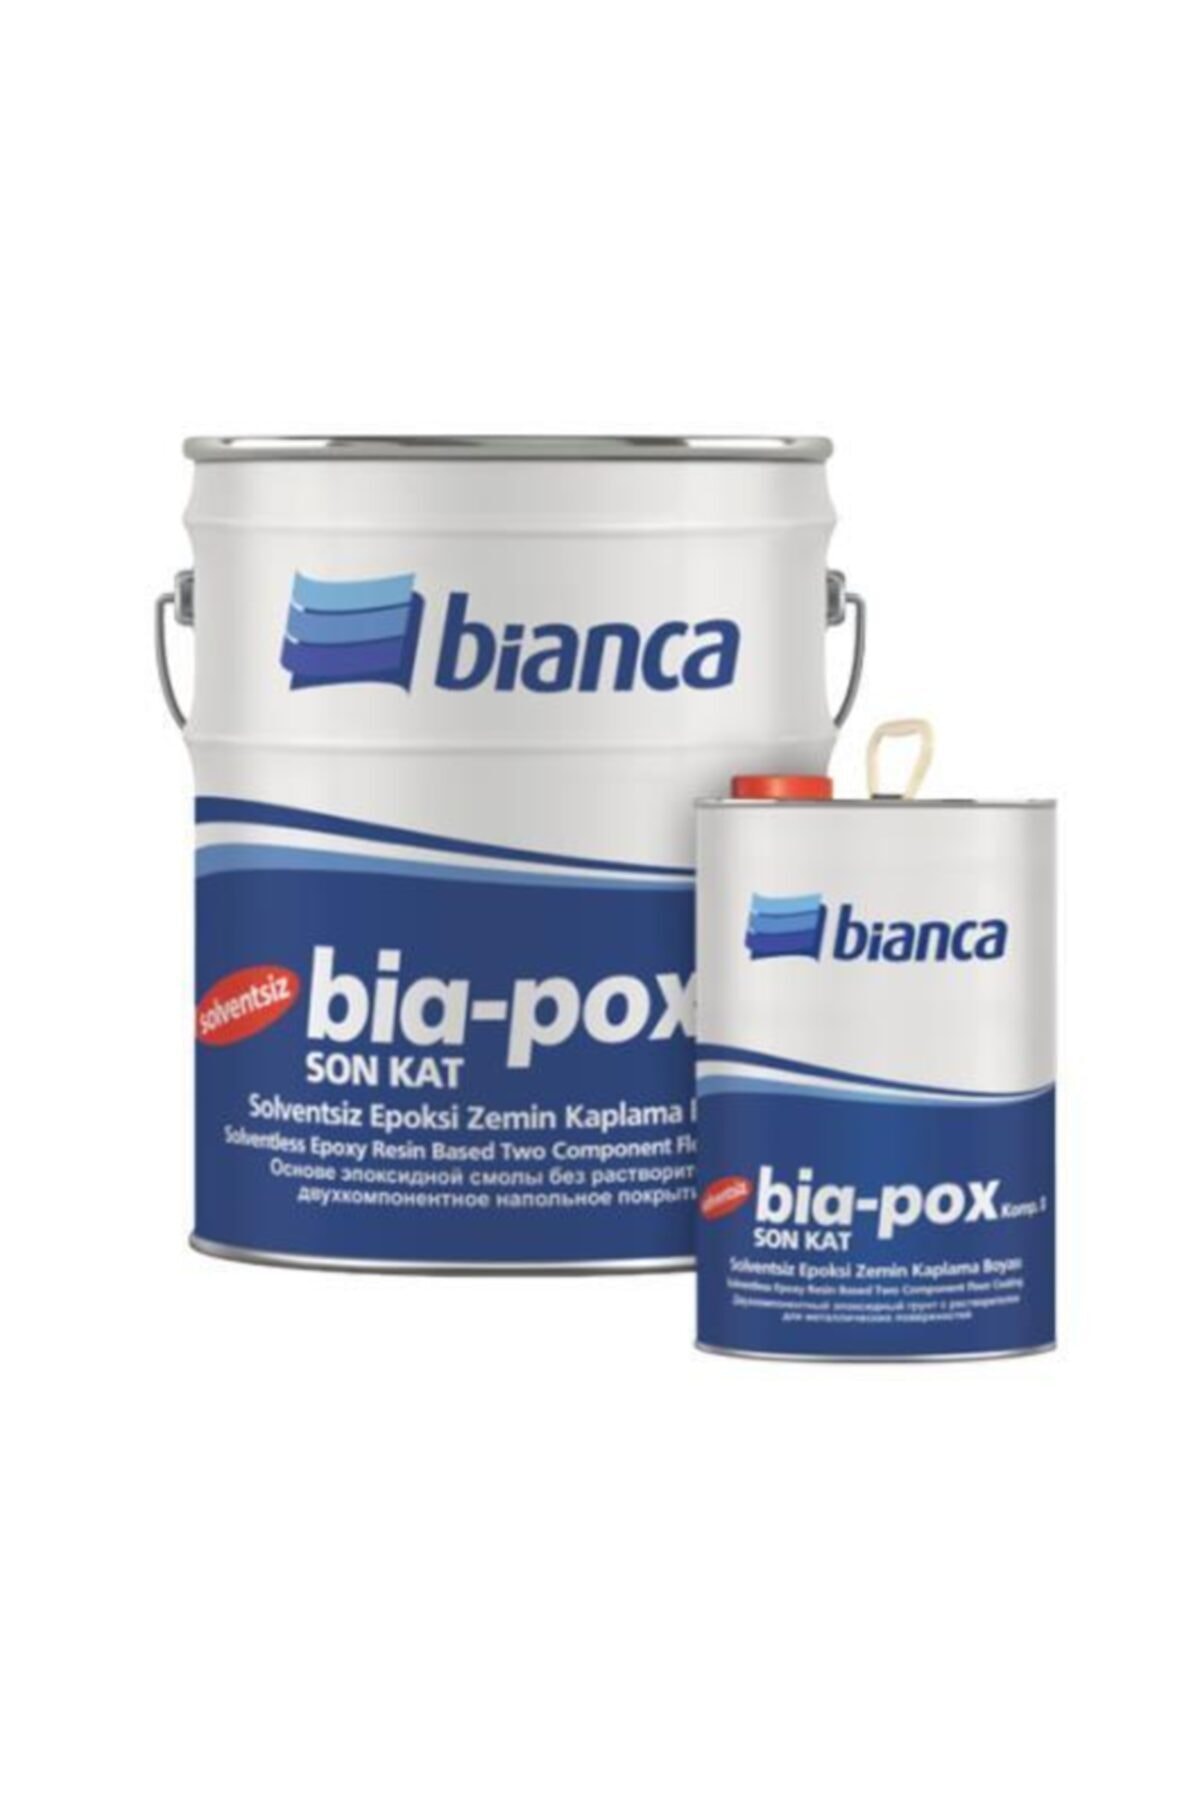 Bianca Bia-pox Solventsiz Epoksi Zemin Kaplama Boyası 2,5kg Beyaz